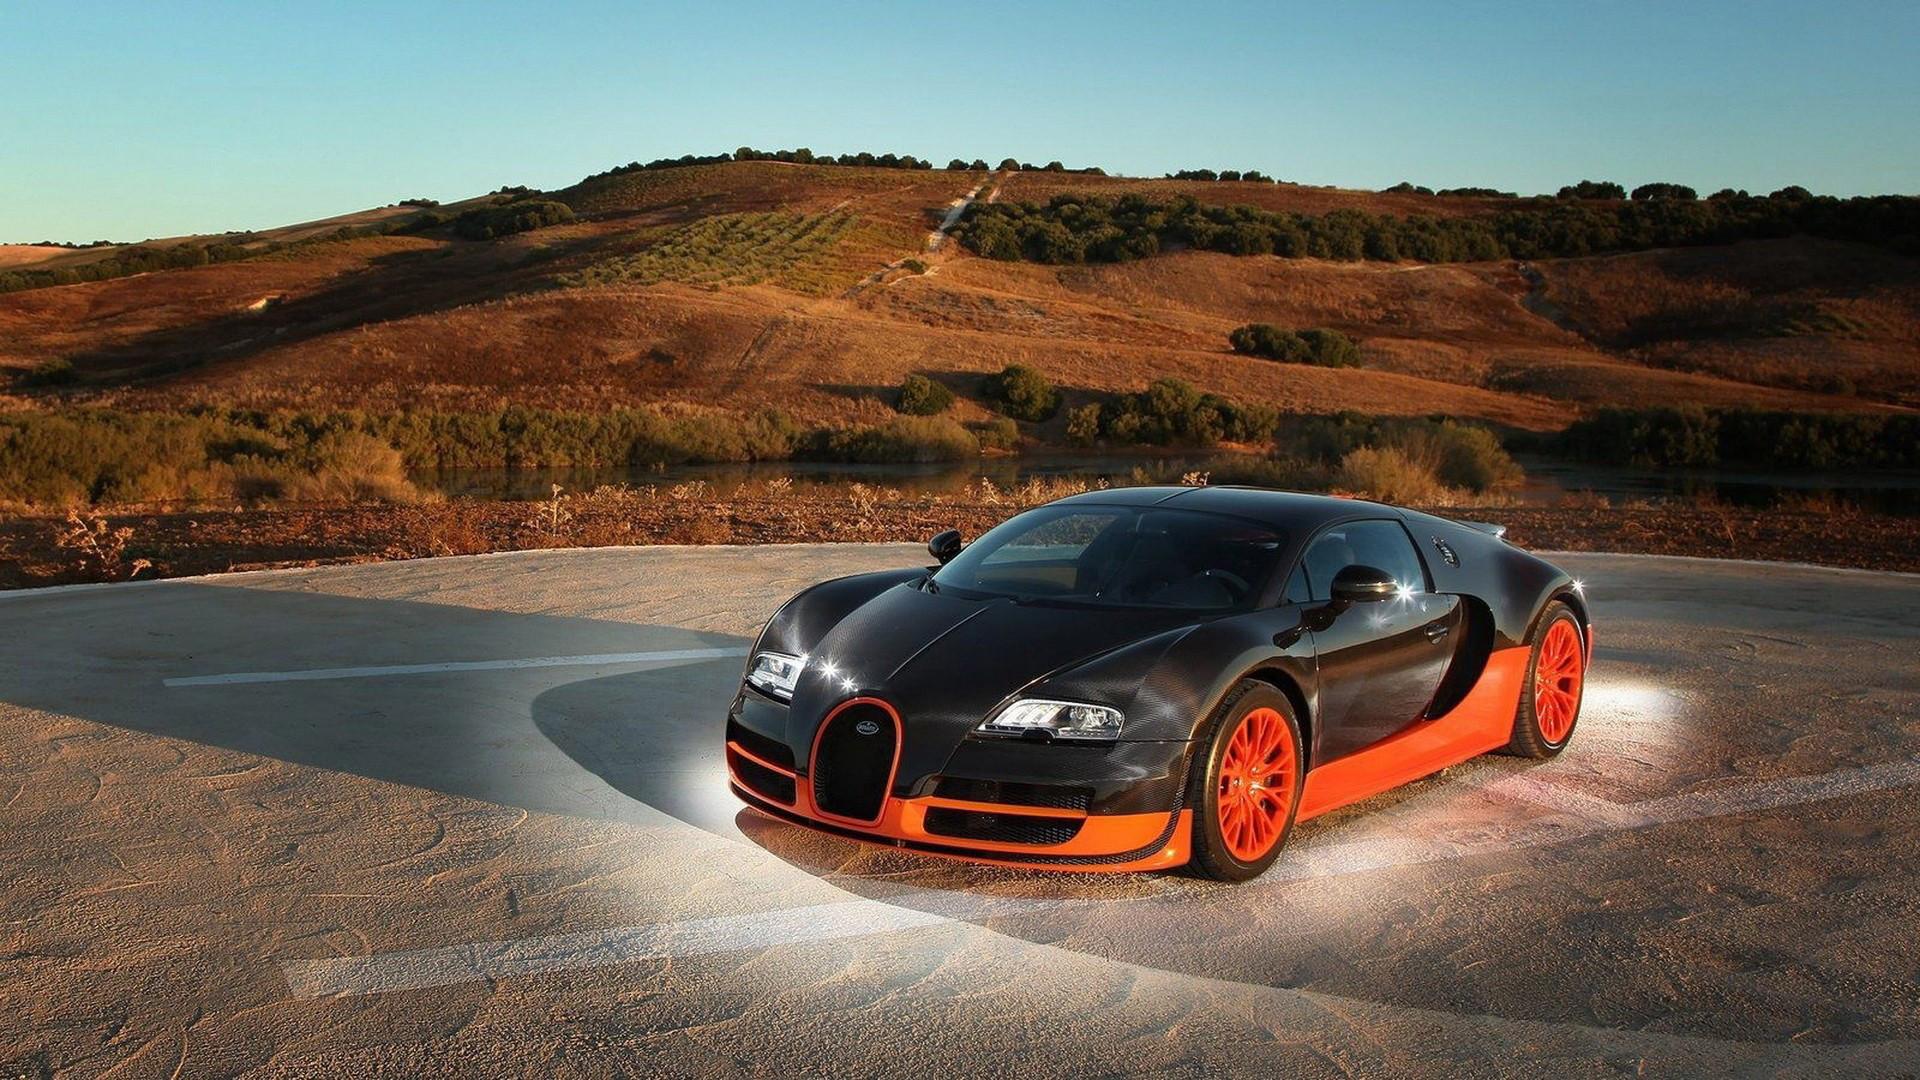 Bugatti Veyron Super Sport Wallpaper background picture